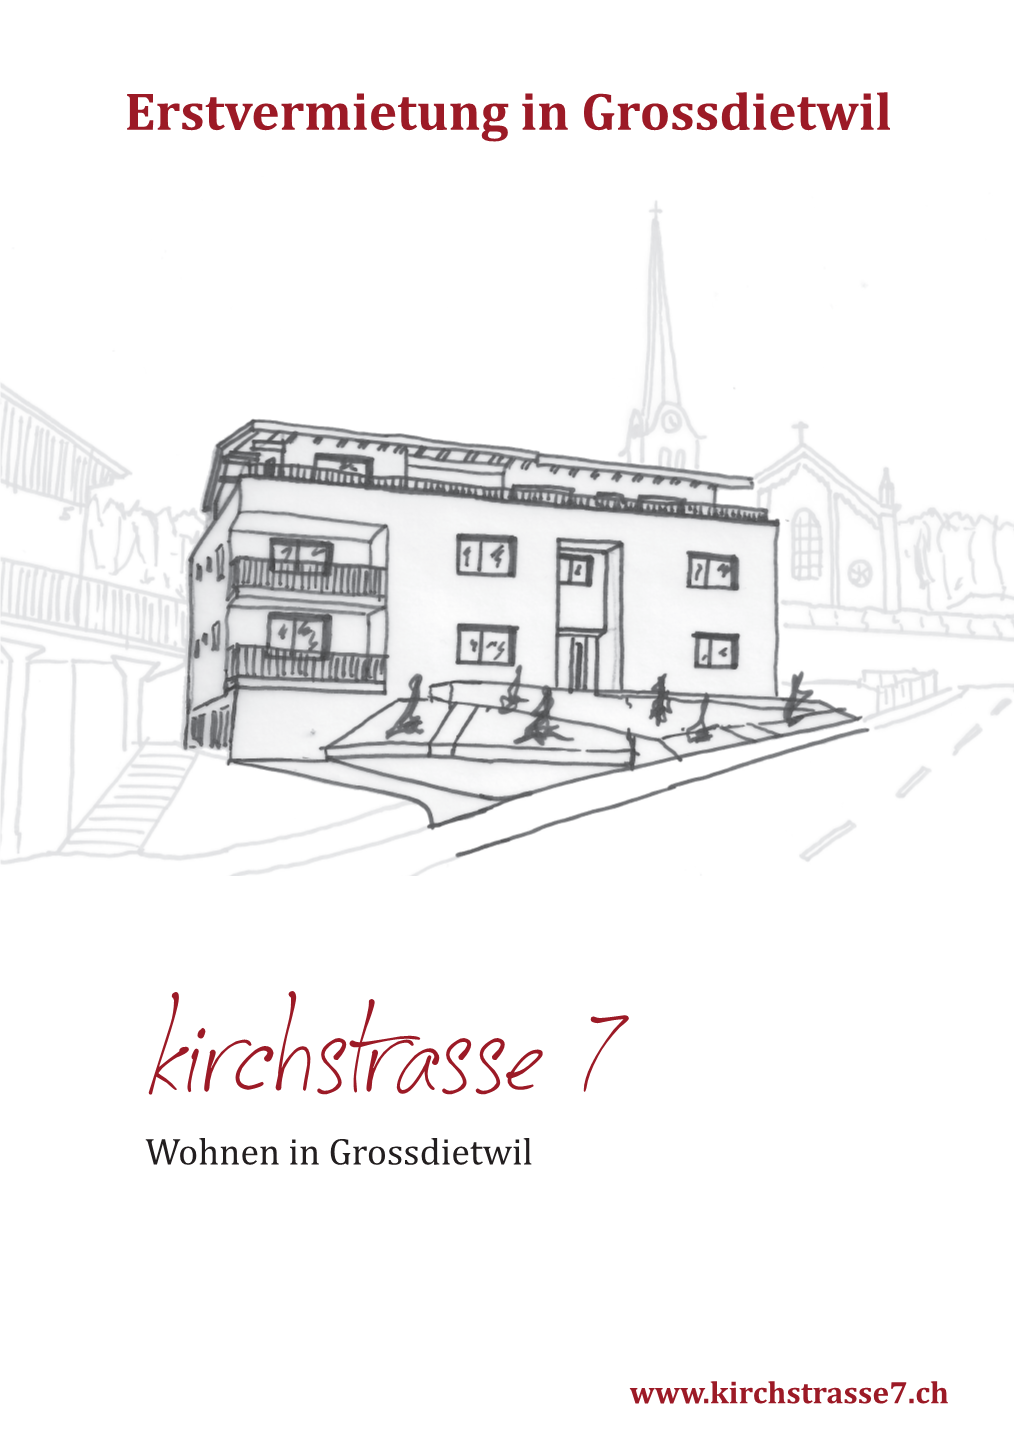 Kirchstrasse 7 Wohnen in Grossdietwil